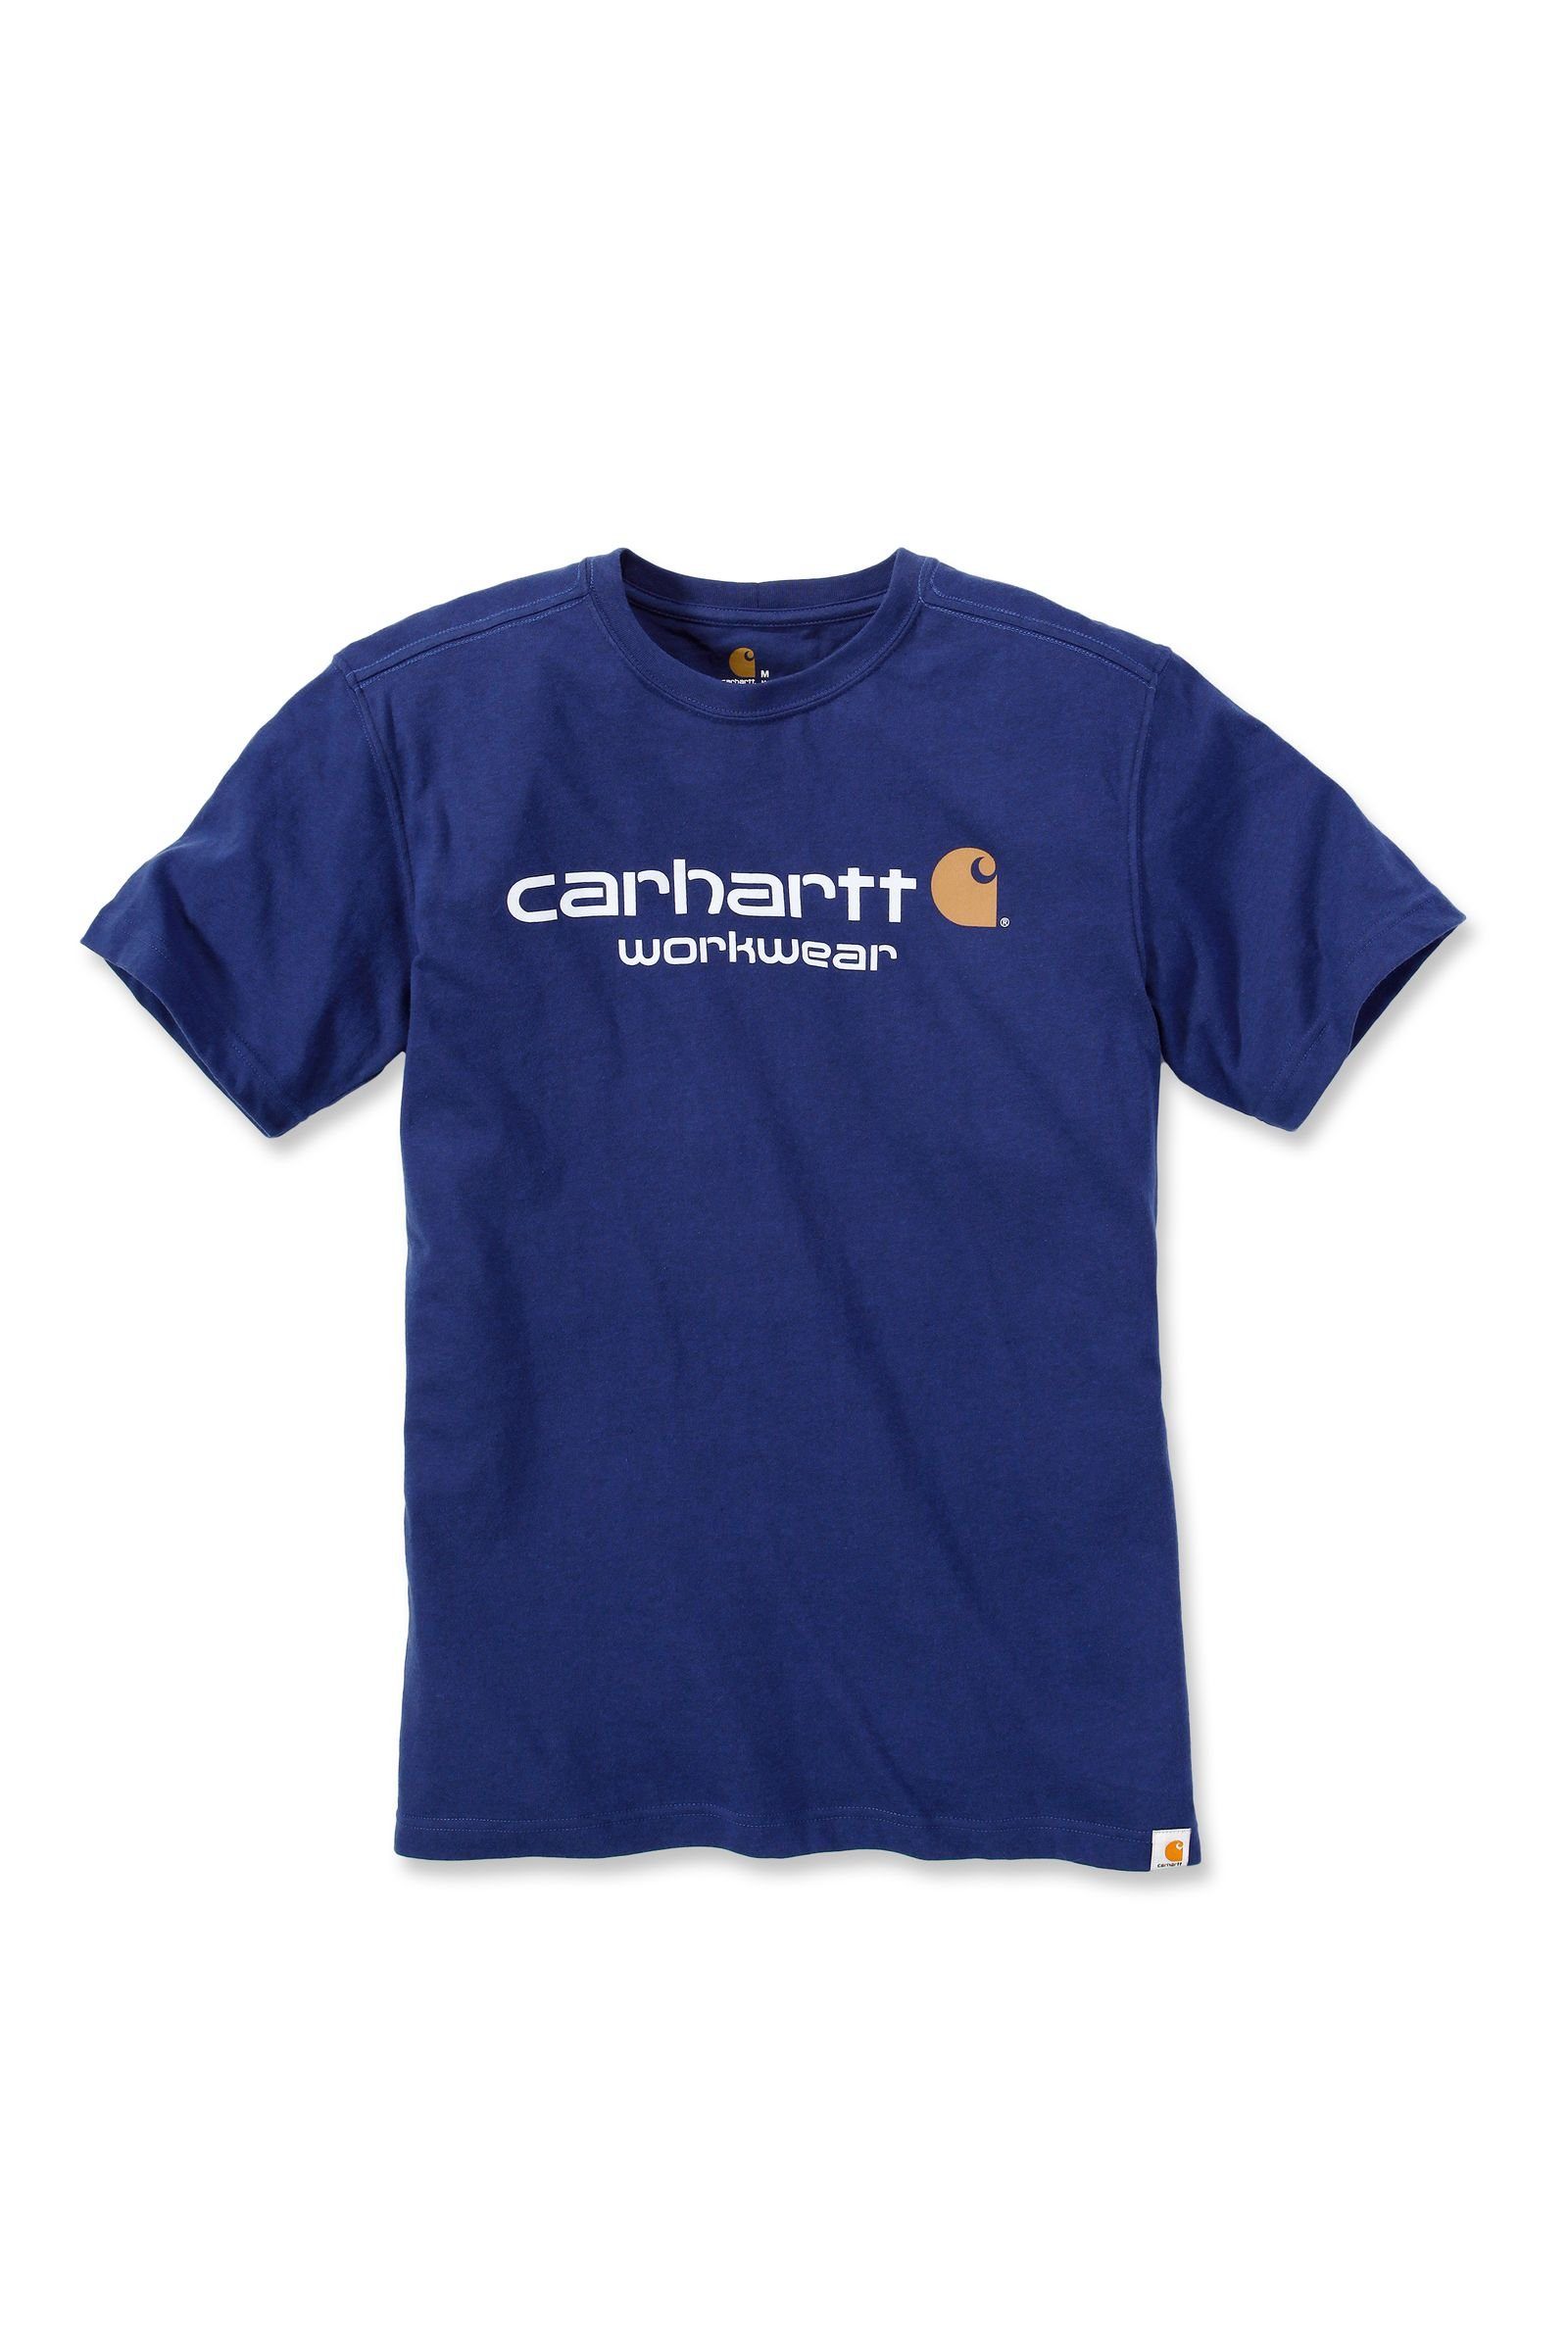 T-Shirt ink heather T-Shirt Adult Carhartt Logo Carhartt 101214 Core blue